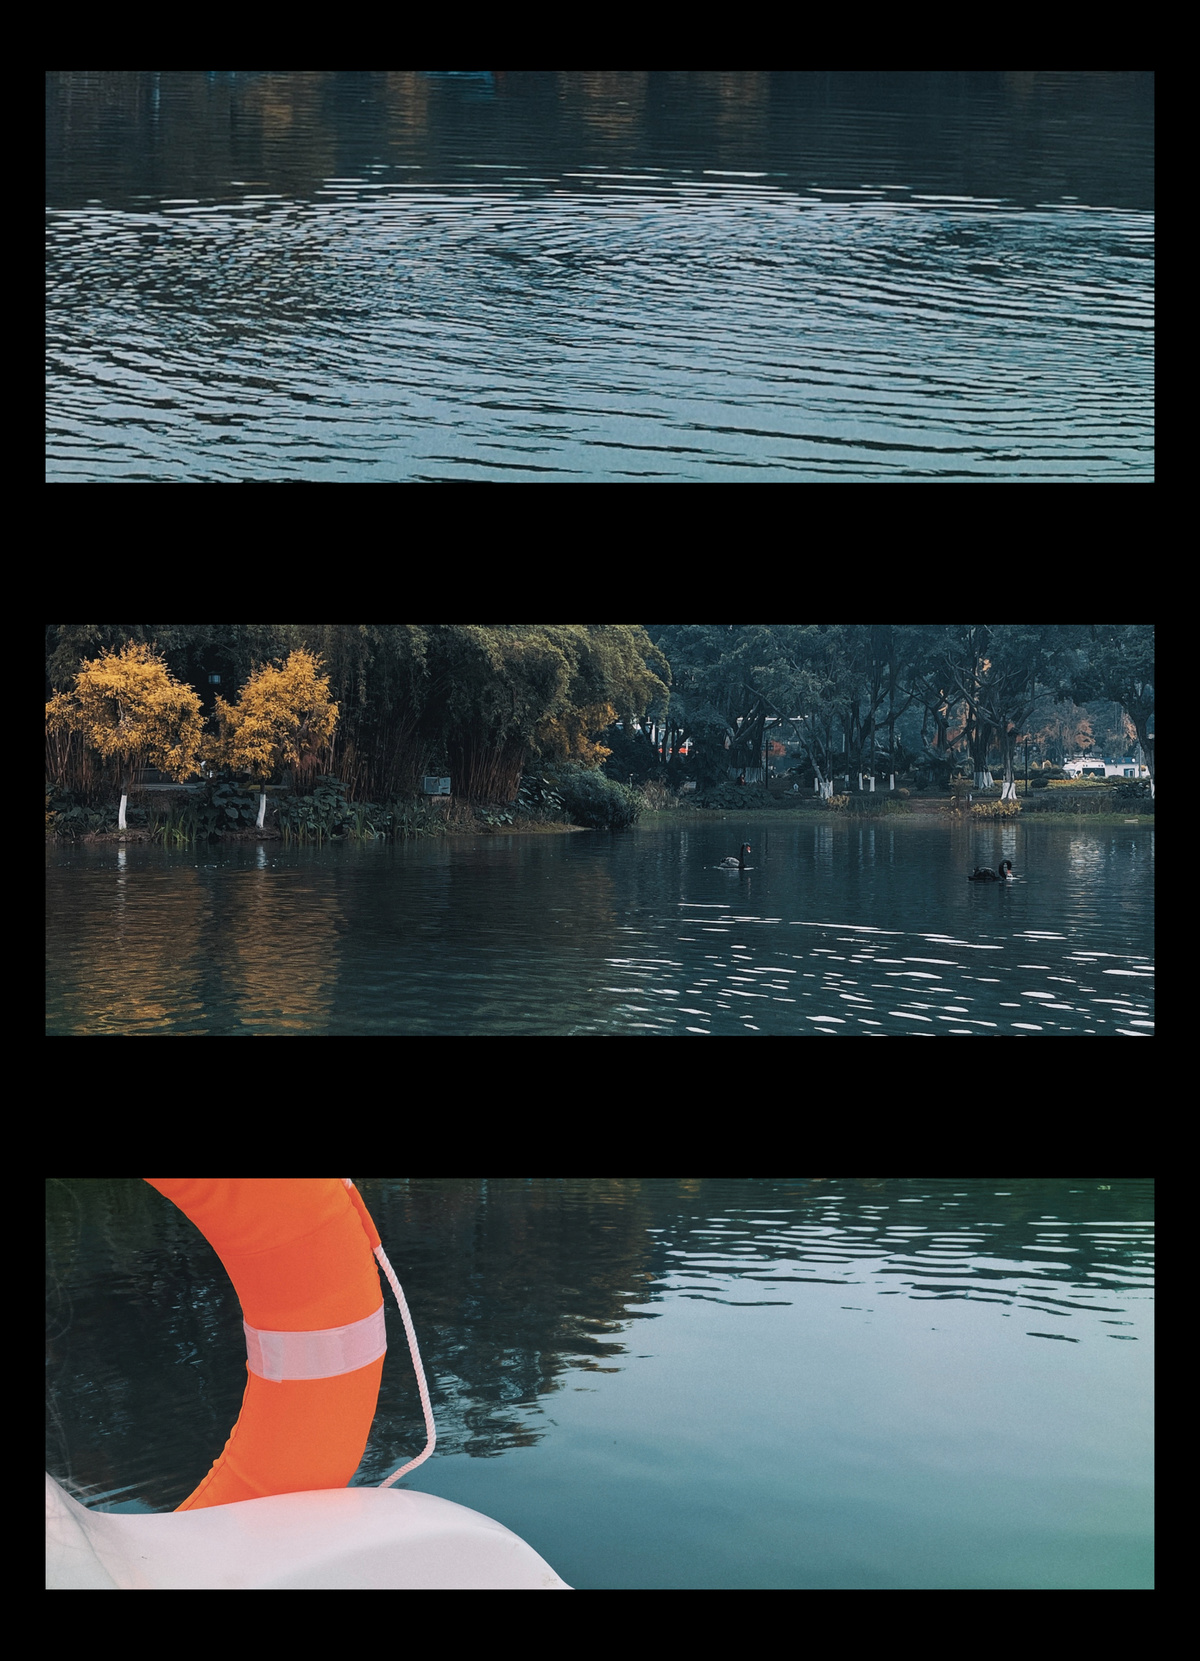 一系列照片展示了一个湖泊或水域以及树木。